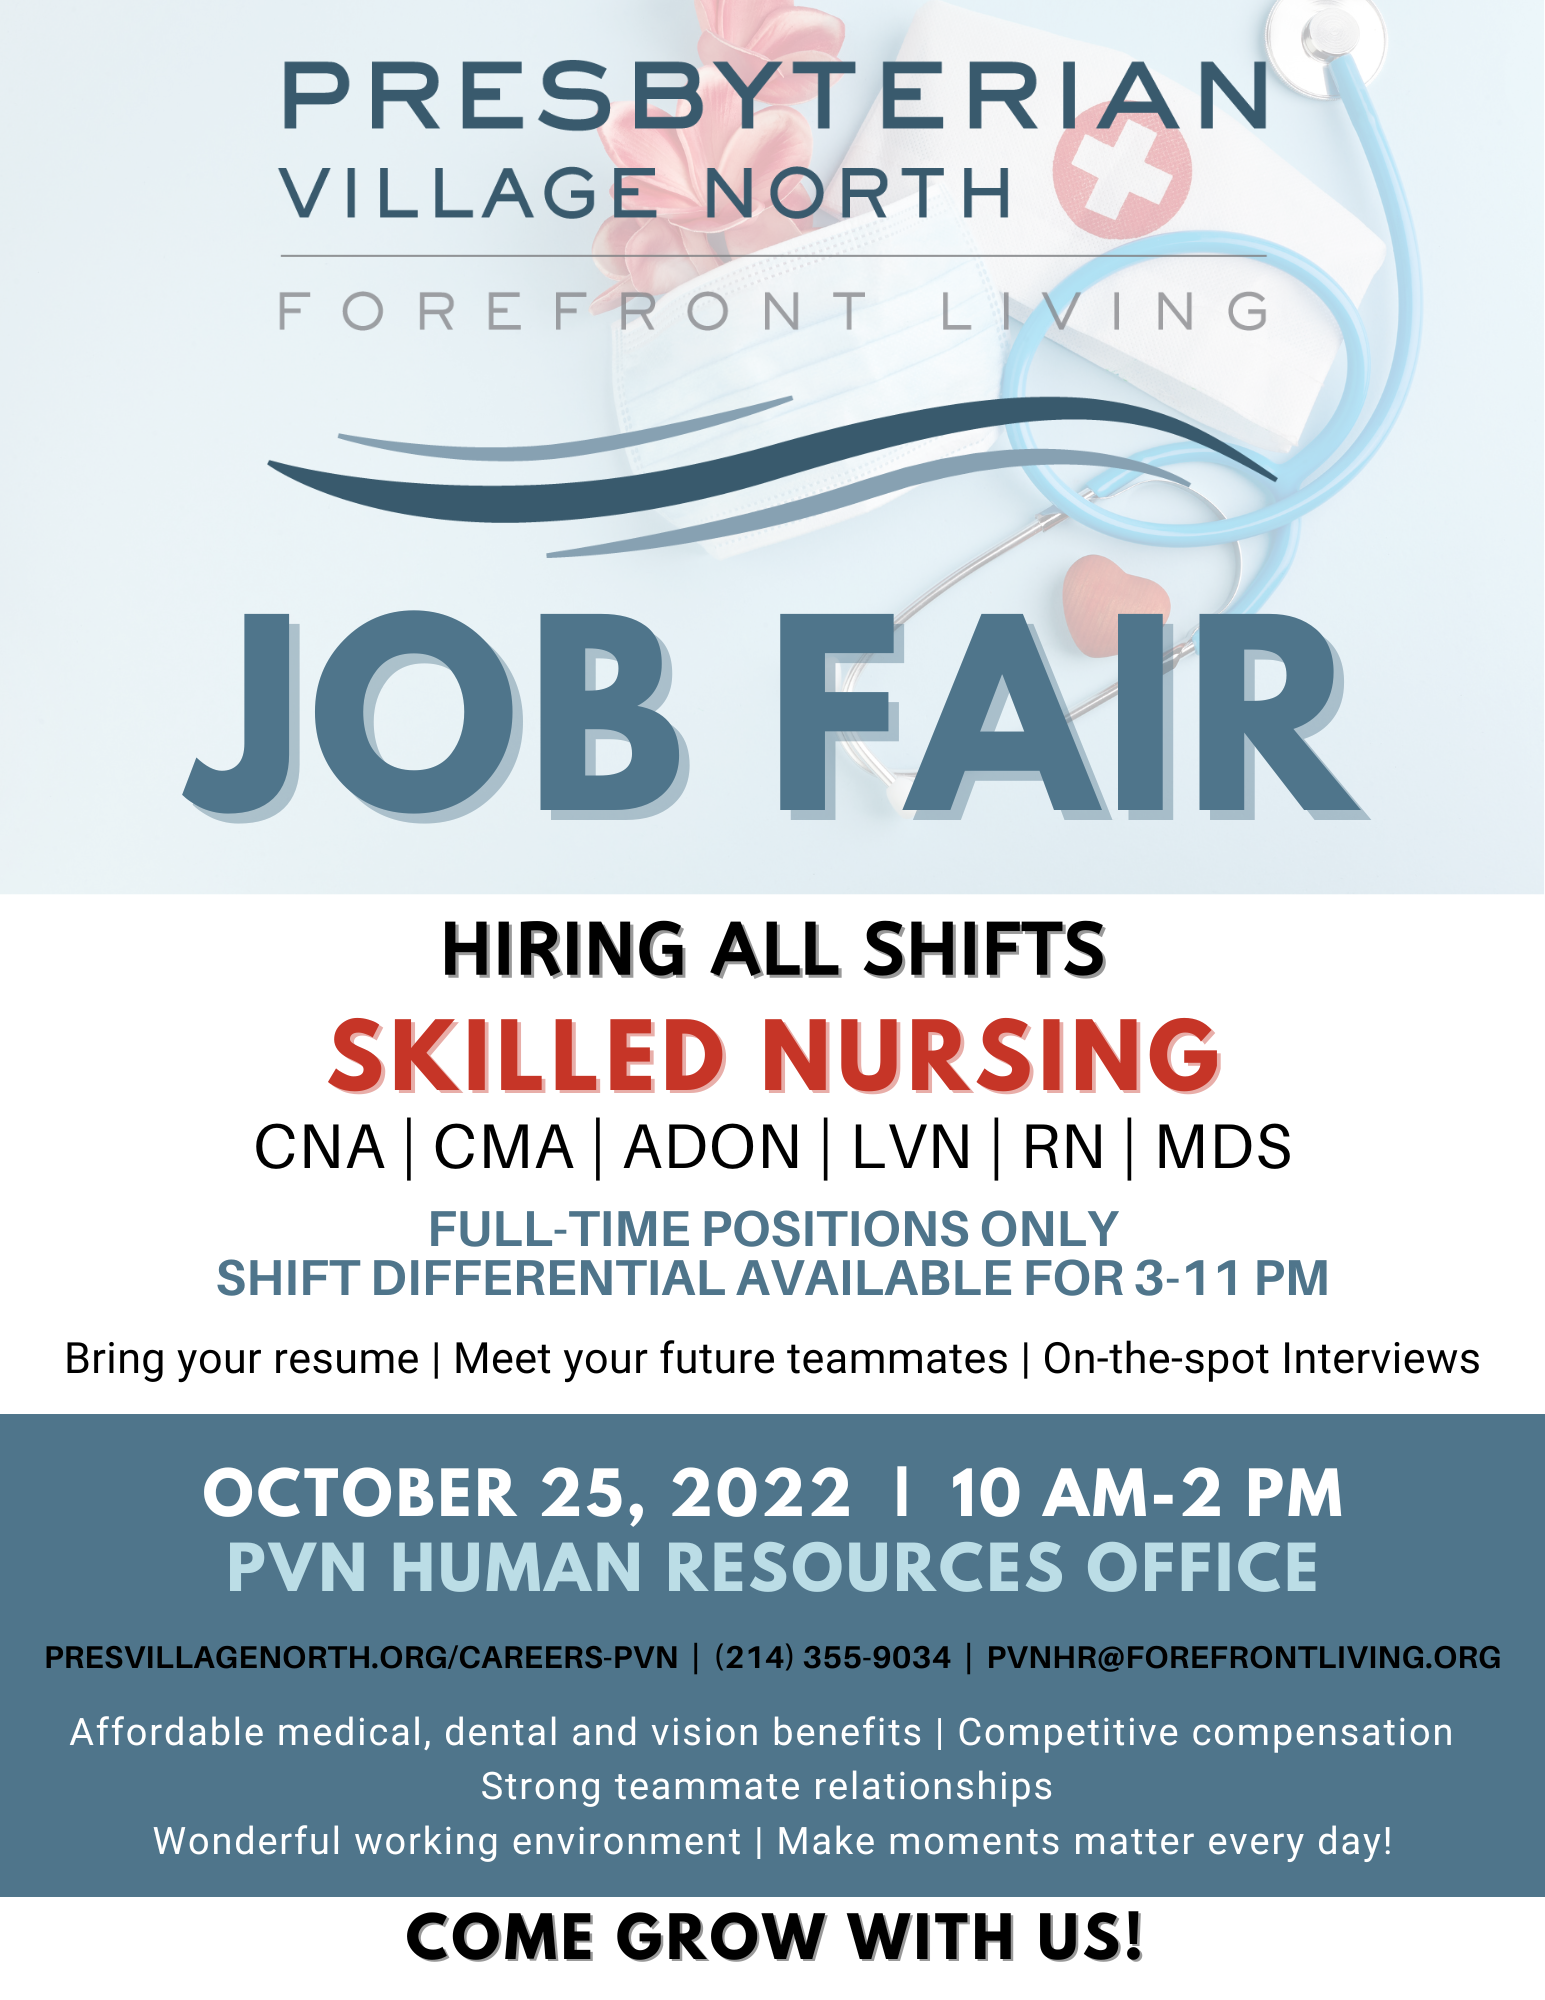 Skilled Nursing Job Fair October 25, 2022 Presbyterian Village North